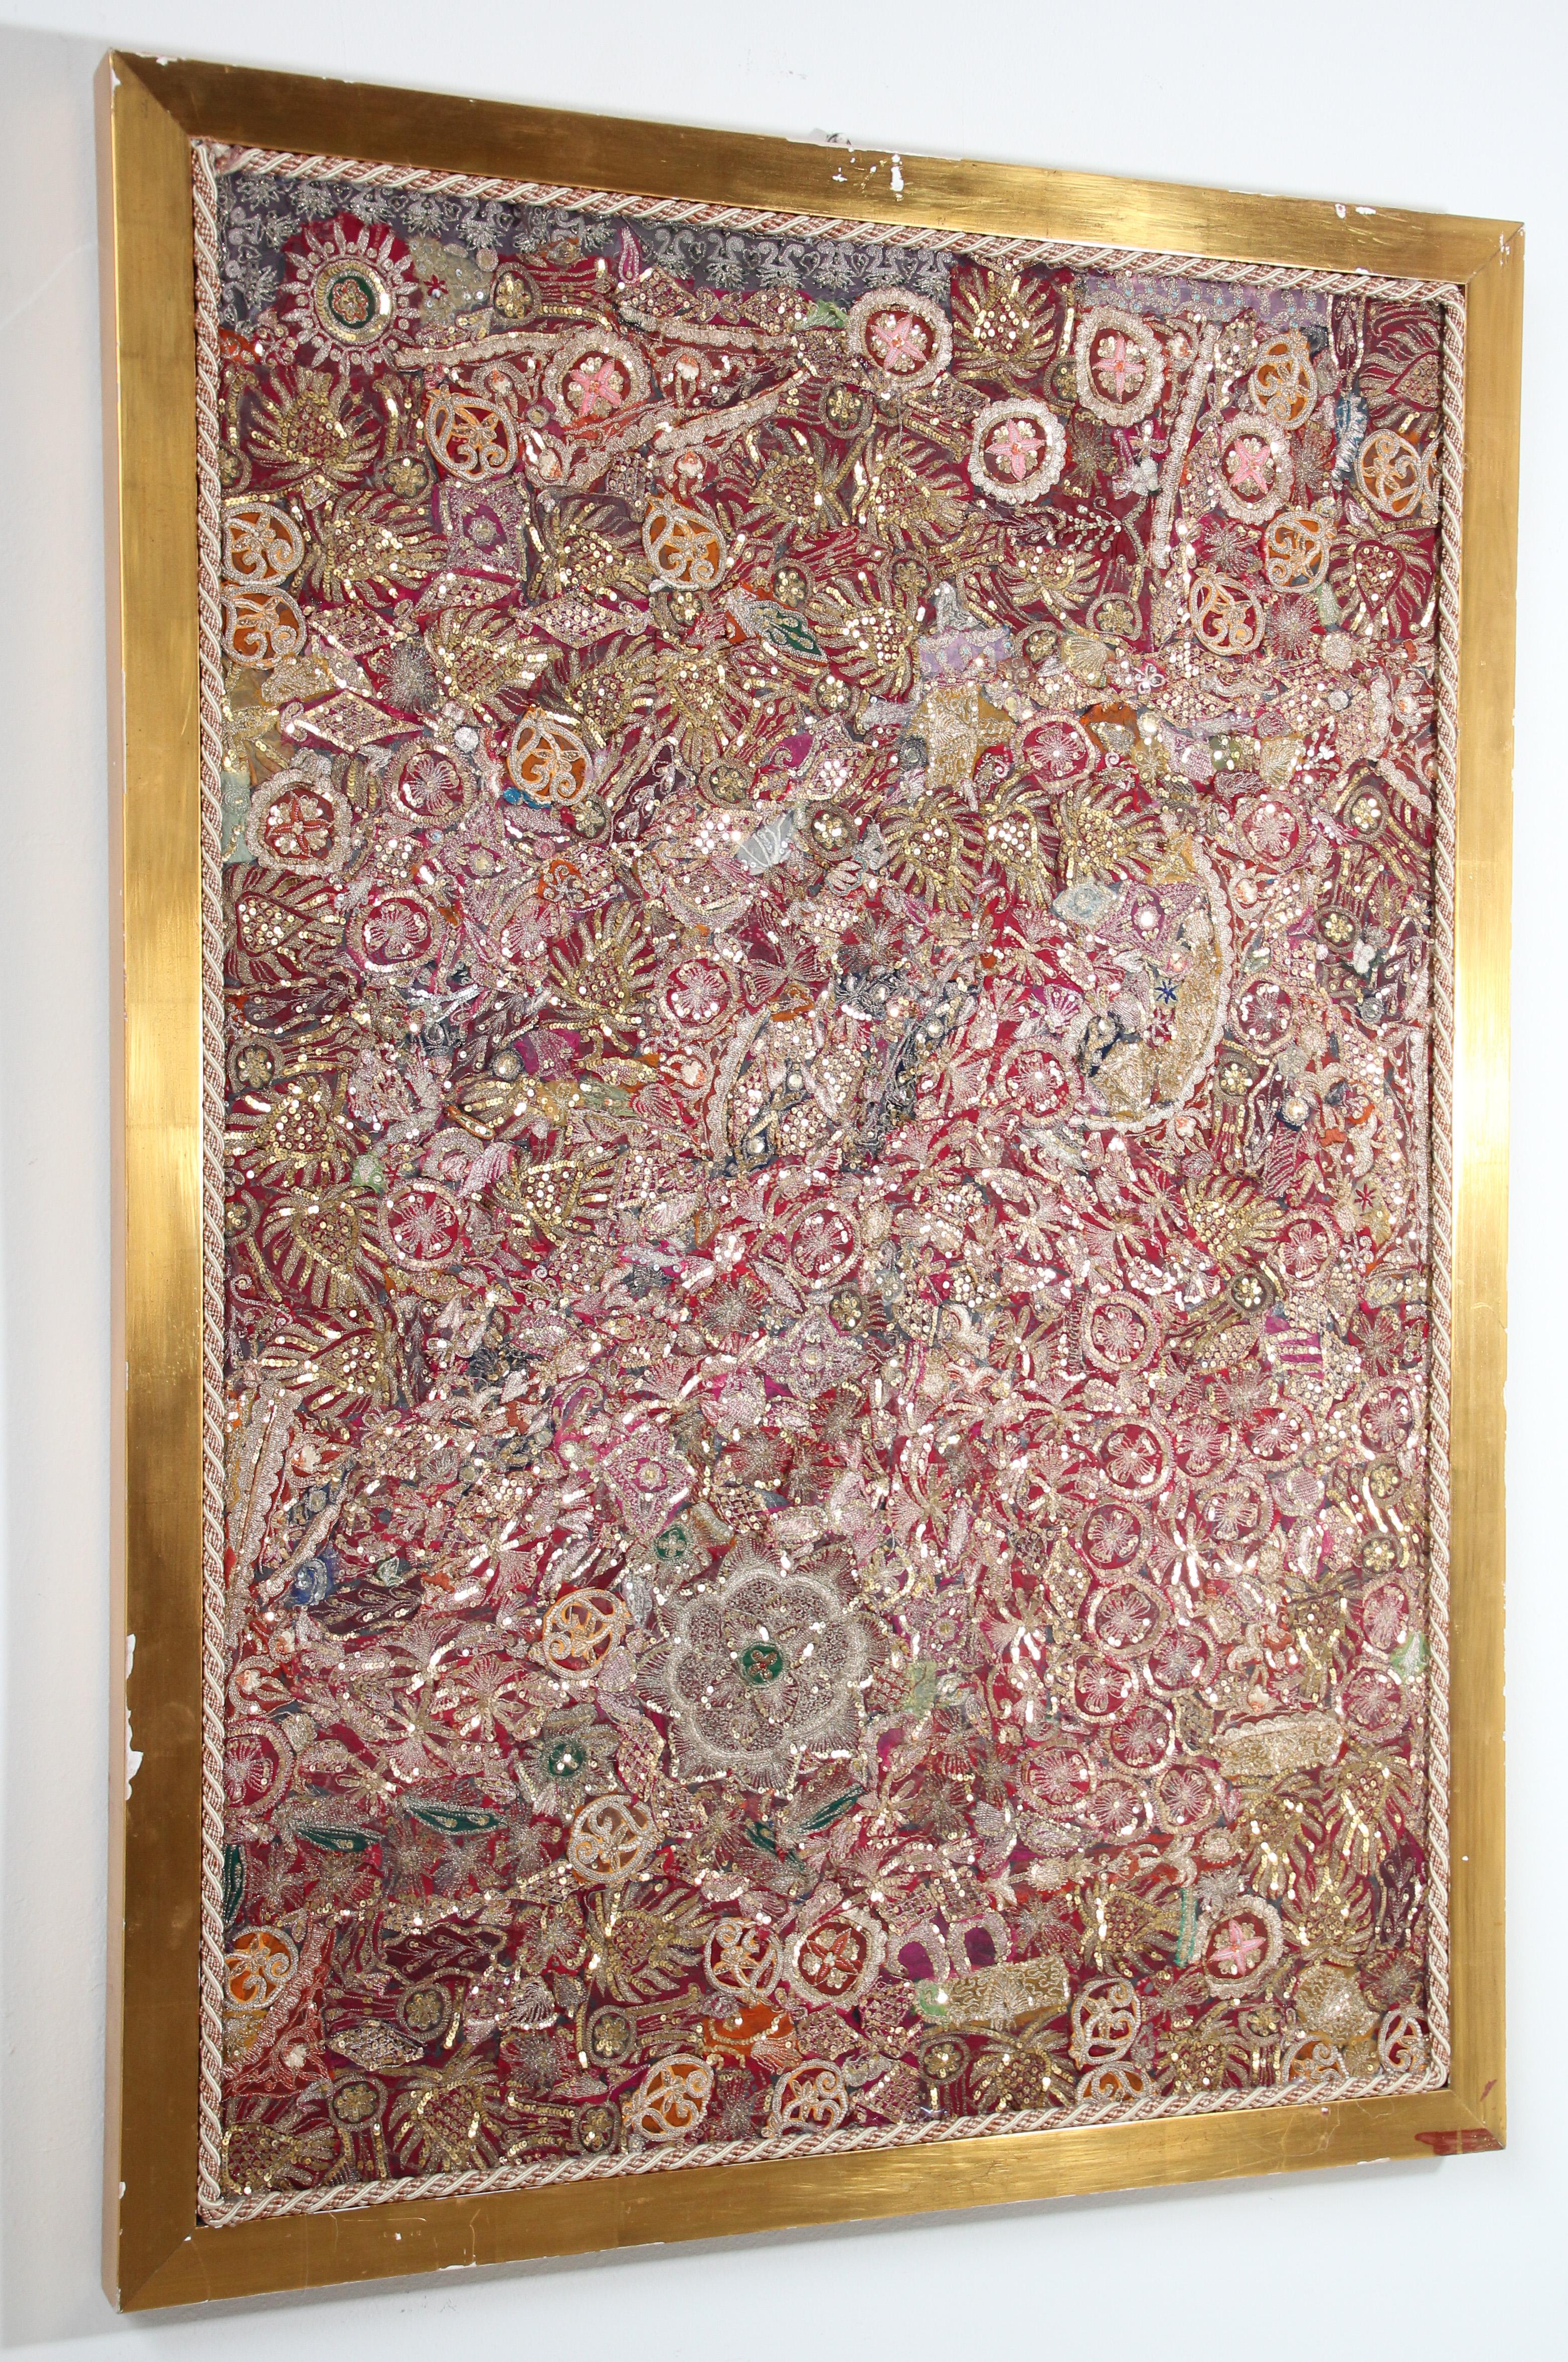 Grand cadre de tapisserie moghole brodée à la main, en soie et fils de métal, provenant du nord de l'Inde.
Les motifs fantaisistes d'art populaire asiatique de ce quilt distinctif sont réalisés avec un véritable sens de la liberté